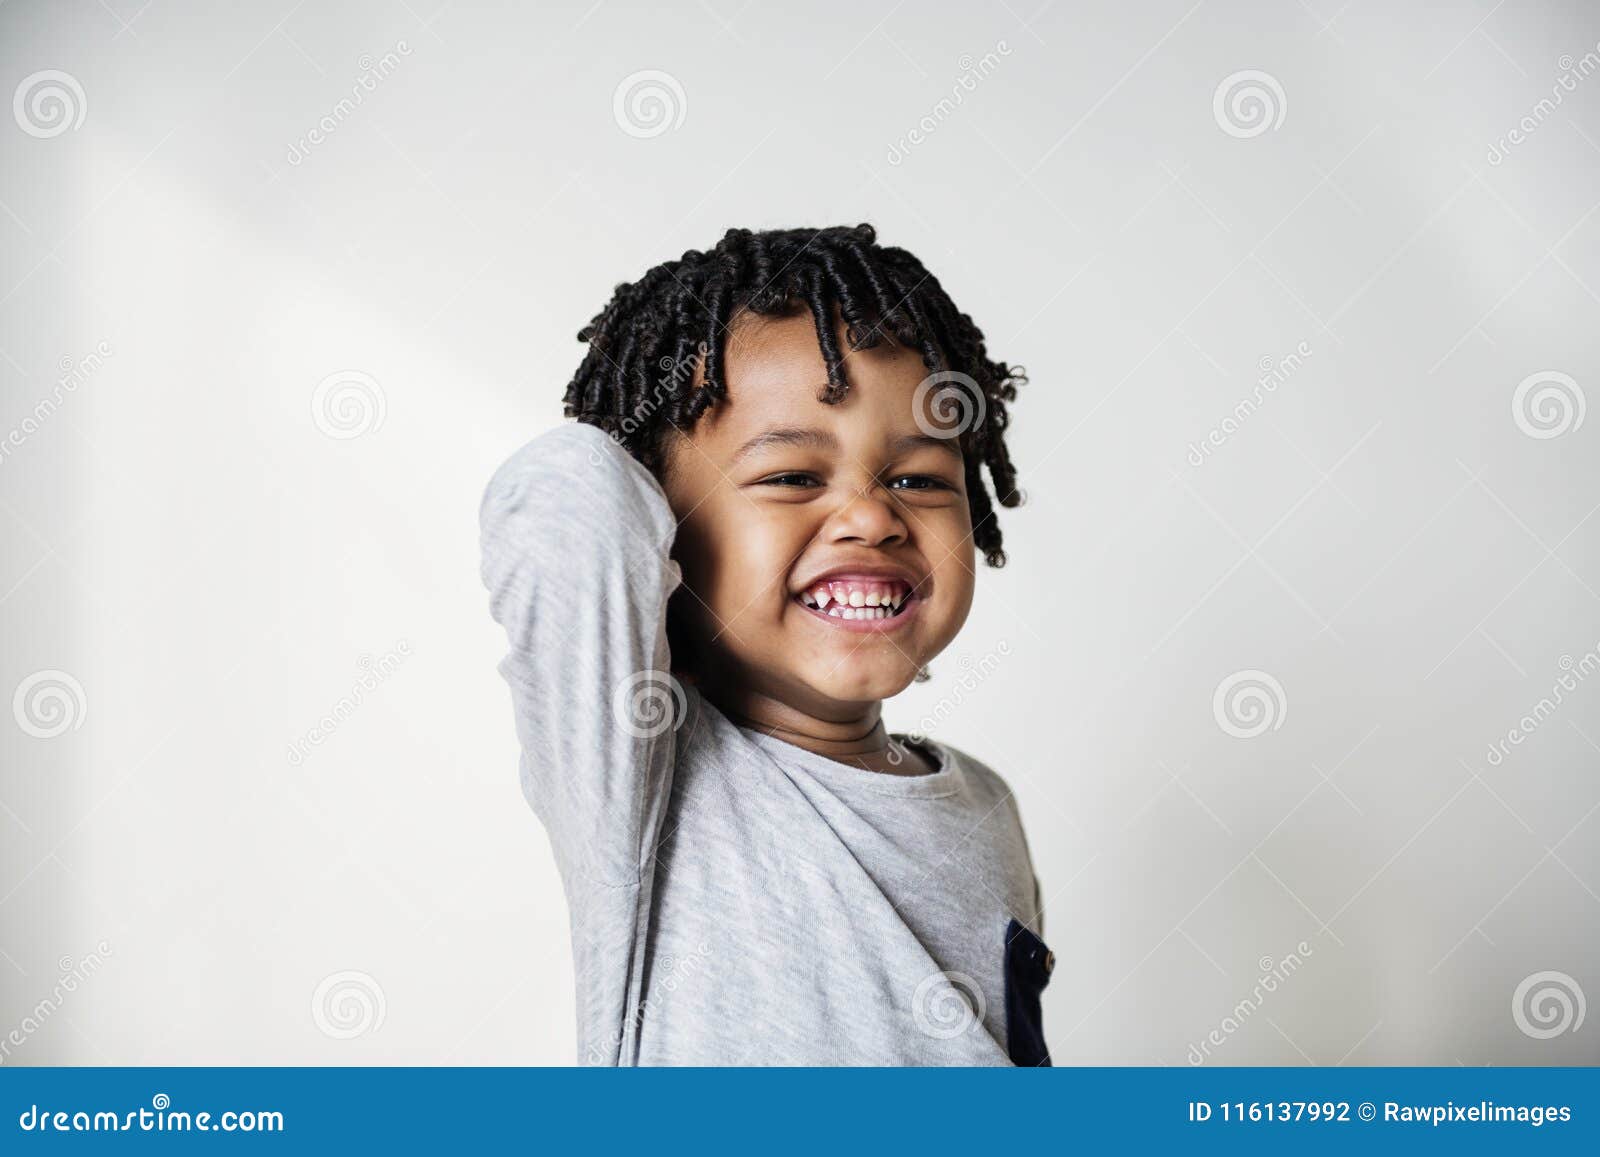 微笑的黑人男孩纵向 库存照片. 图片 包括有 幸福, 英俊, 投反对票, 立场, 一个, 男性, 少许, 设计 - 27979524